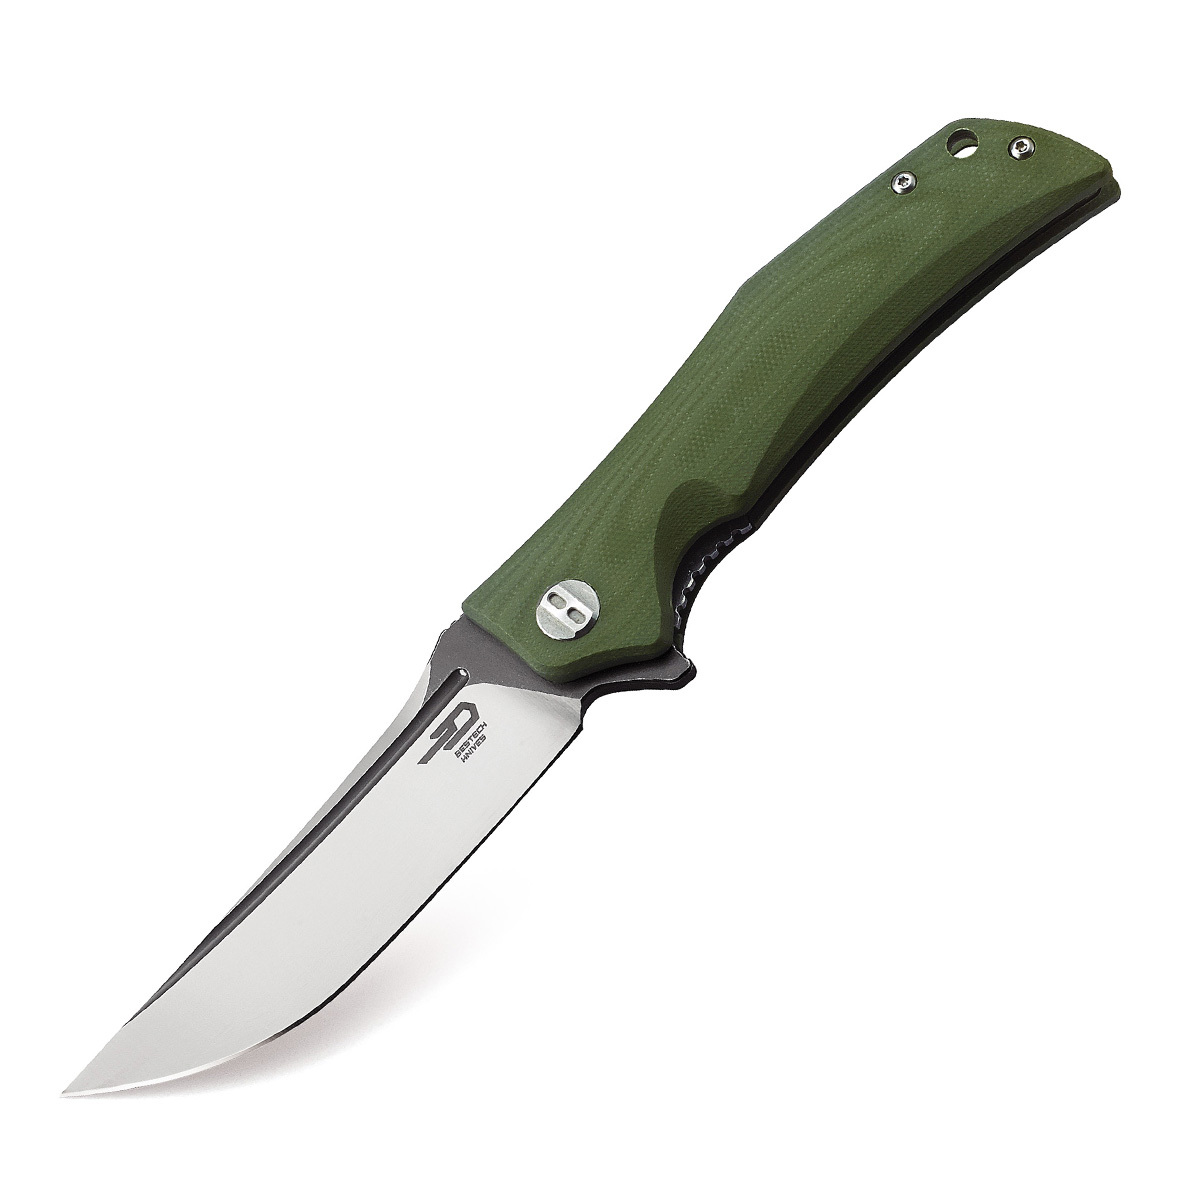 Складной нож Bestech Scimitar, сталь D2, рукоять G10, зеленый складной нож bestech marukka bt2002a сталь m390 рукоять титан